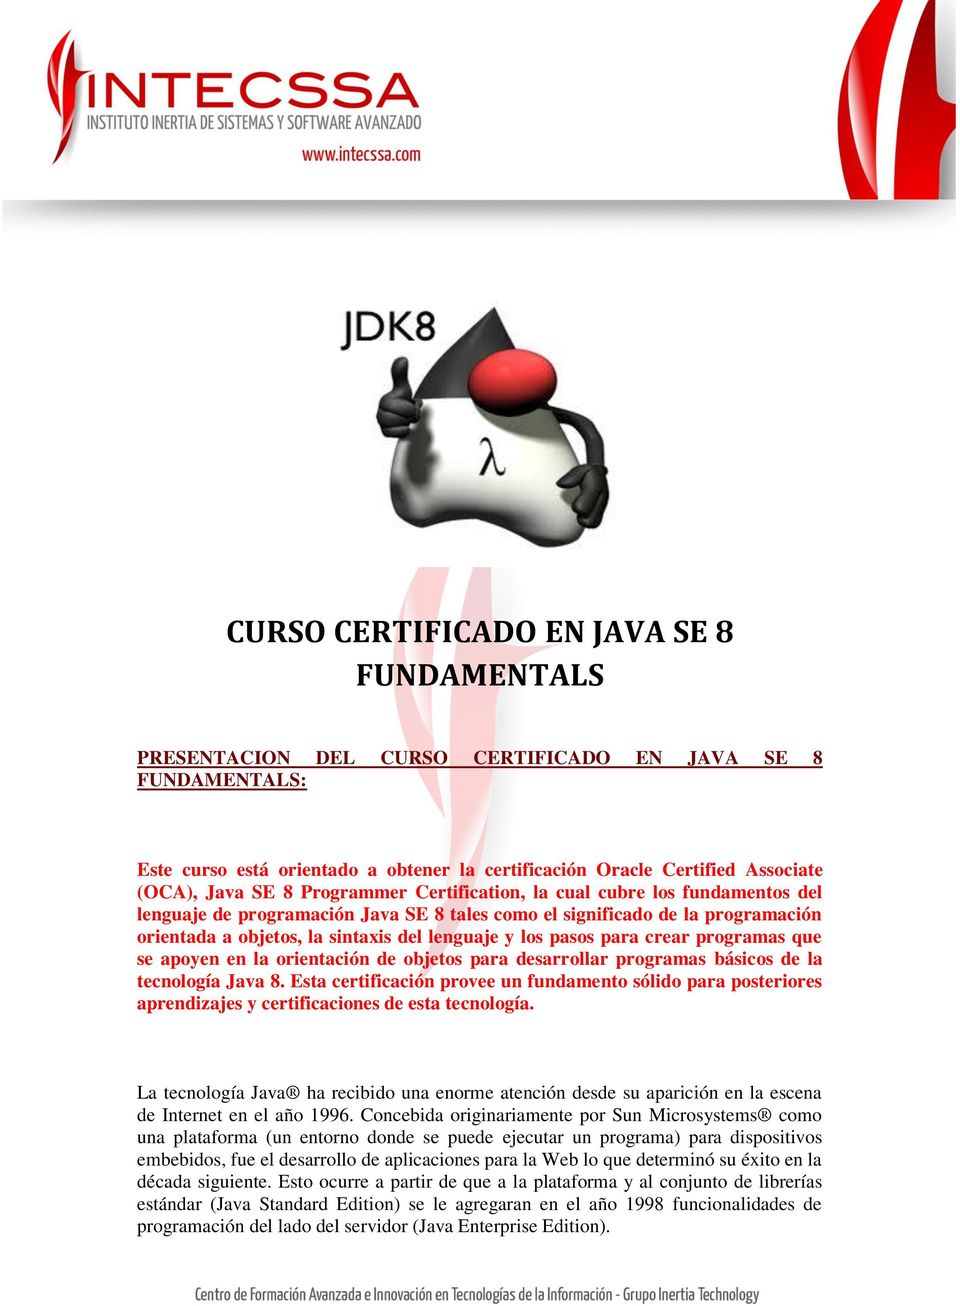 pasos para crear programas que se apoyen en la orientación de objetos para desarrollar programas básicos de la tecnología Java 8.